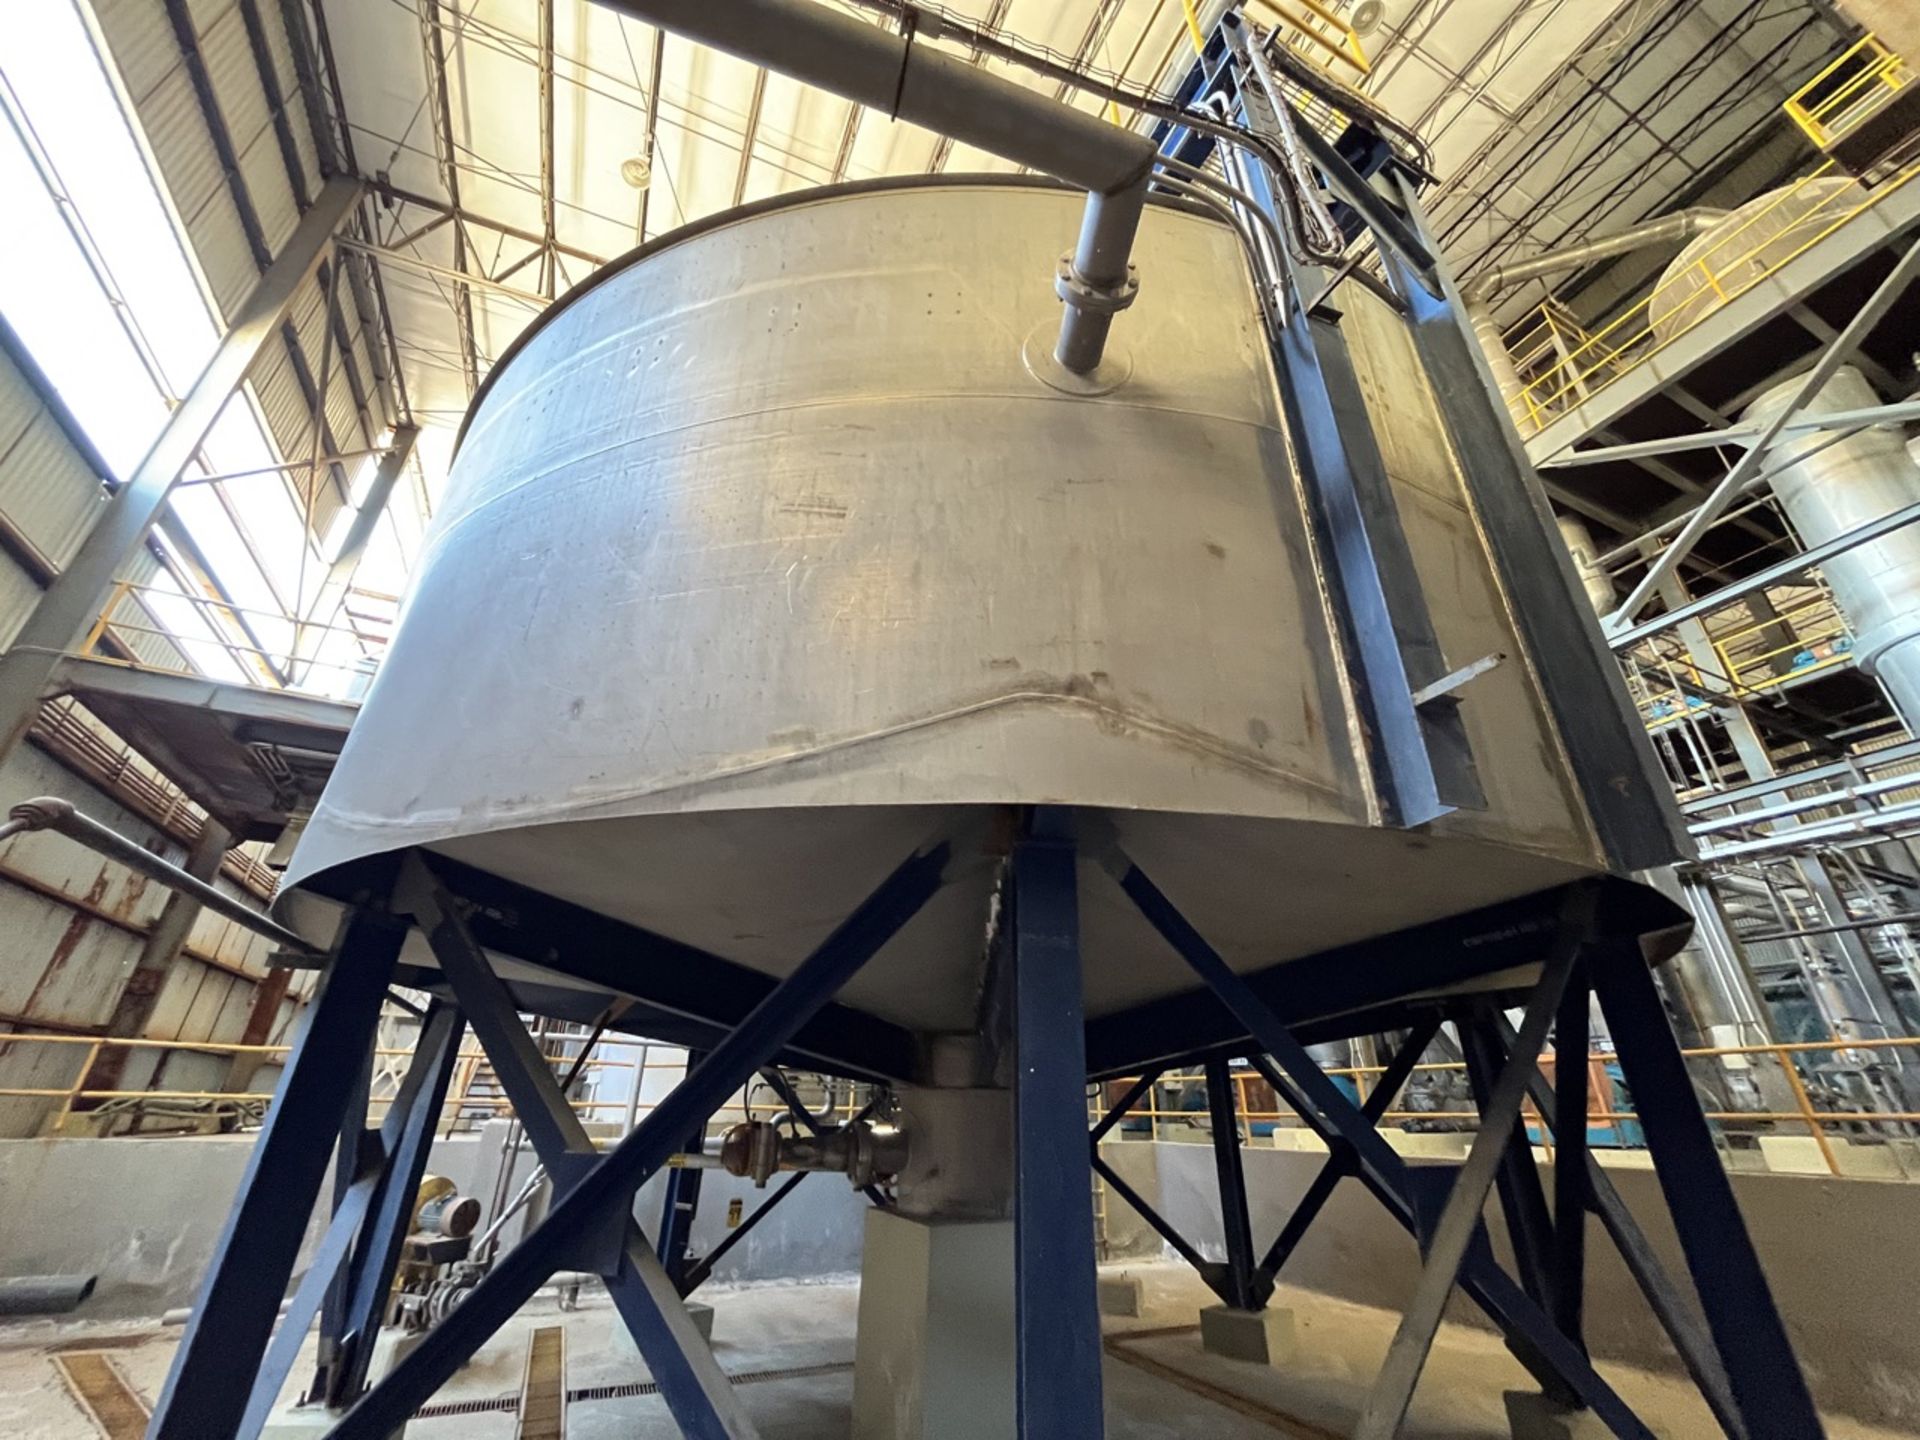 Stainless steel storage tank, measuring approximately 7 meters in diameter x 5.50 meters in height - Image 3 of 20